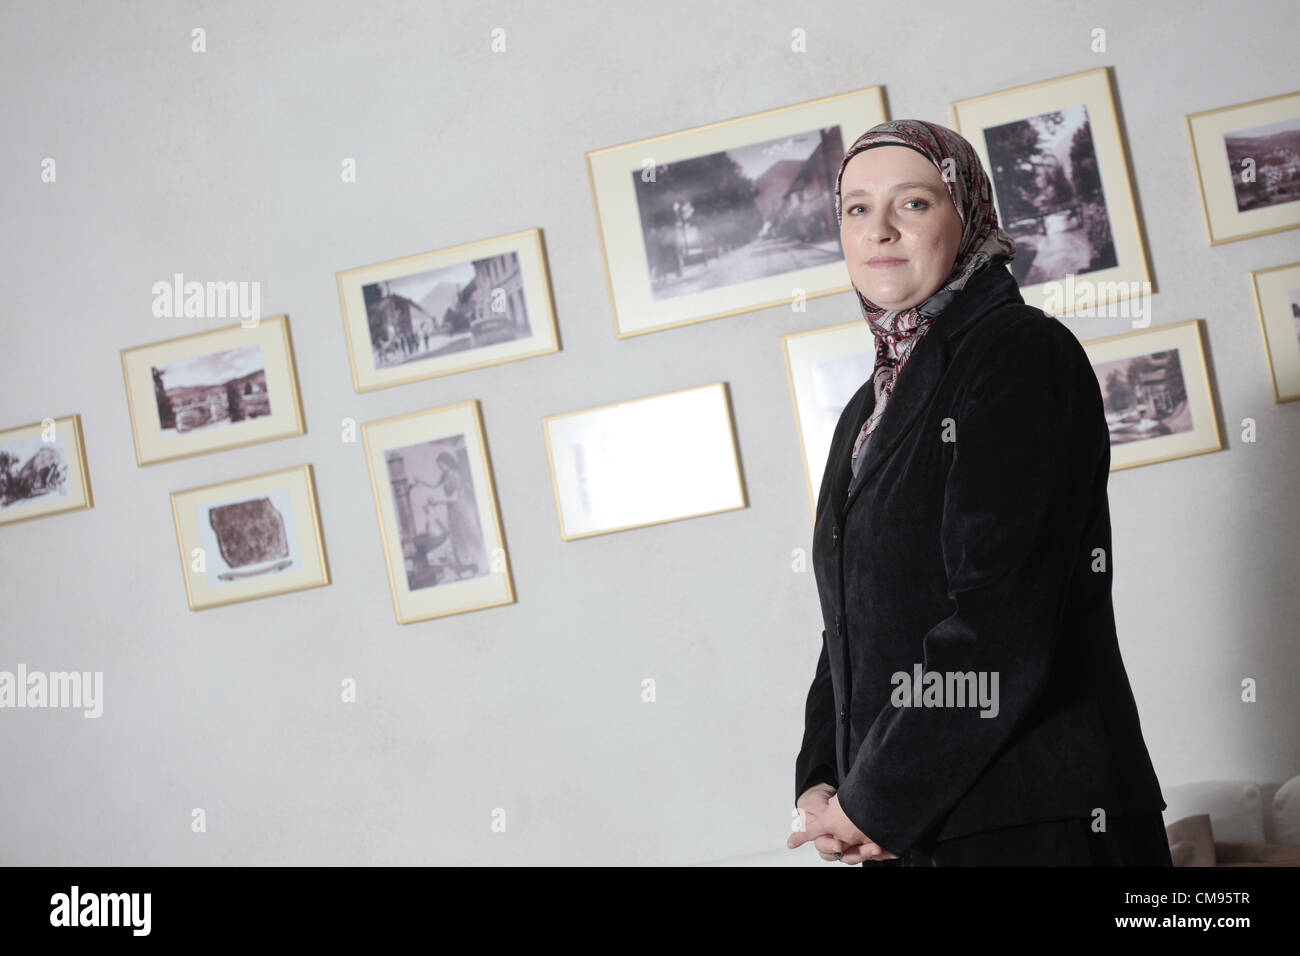 De Visoko, en Bosnia. 1 de noviembre de 2012. Amra Babic, alcalde de la ciudad bosnia de Visoko, a unos 30 kilómetros al norte de Sarajevo, en Bosnia. A los 43 años se convierte en la primera economista hijab-wearing alcalde, y posiblemente el único en Europa. Foto de stock